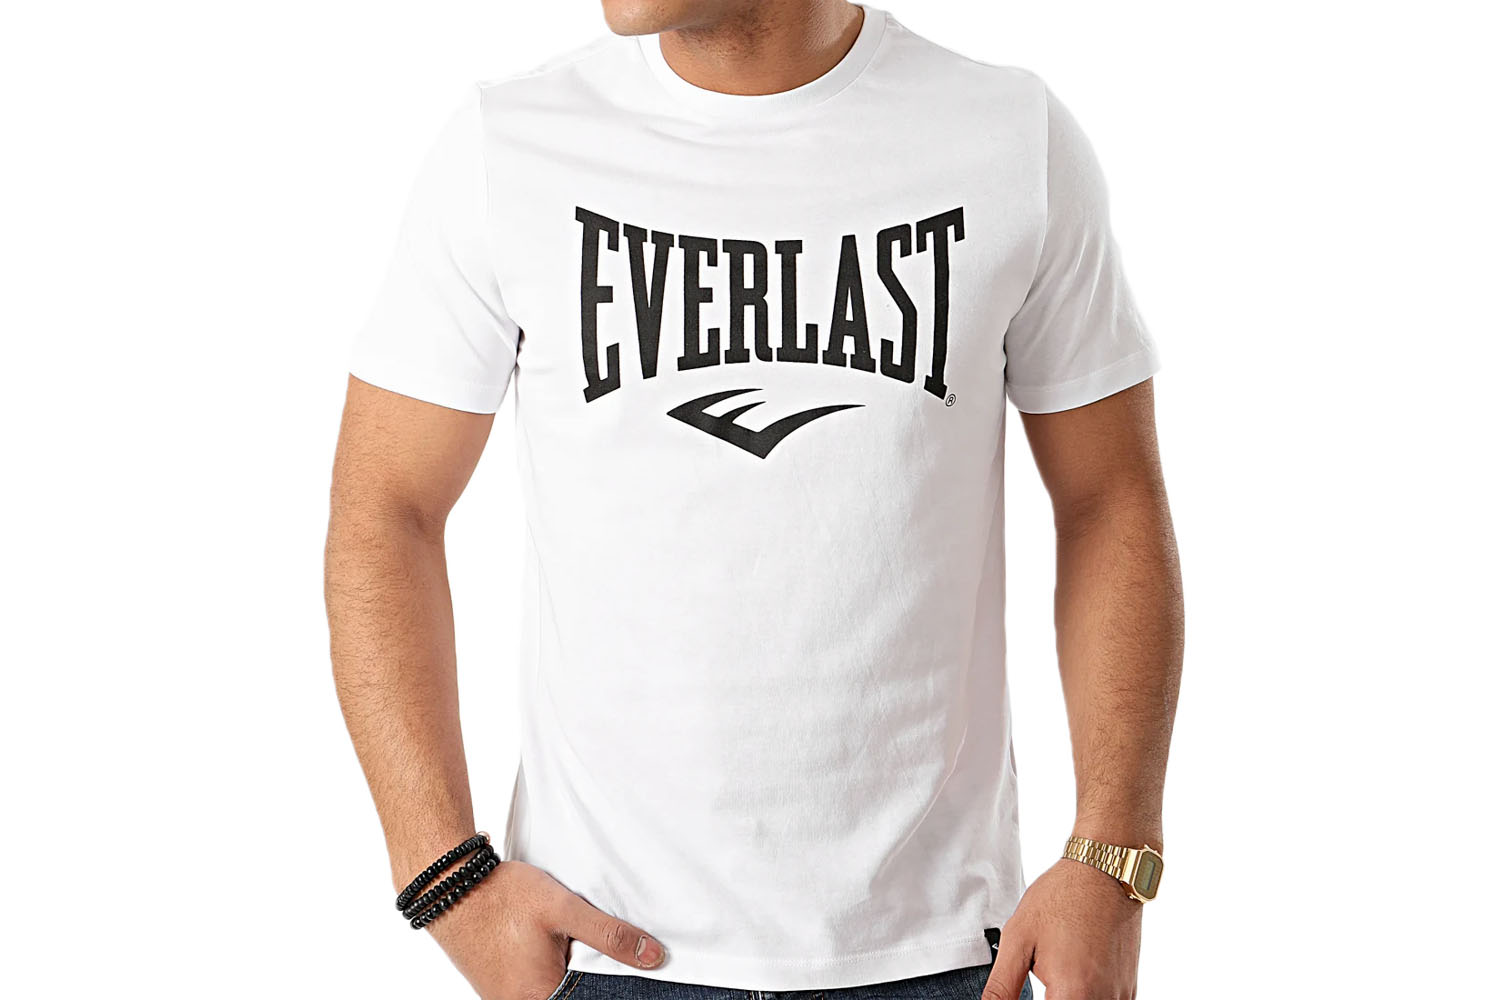 Everlast T-Shirt 1910 Sport Man 100% Cotton Size: S, M, L, XL, XXL, 3 XL